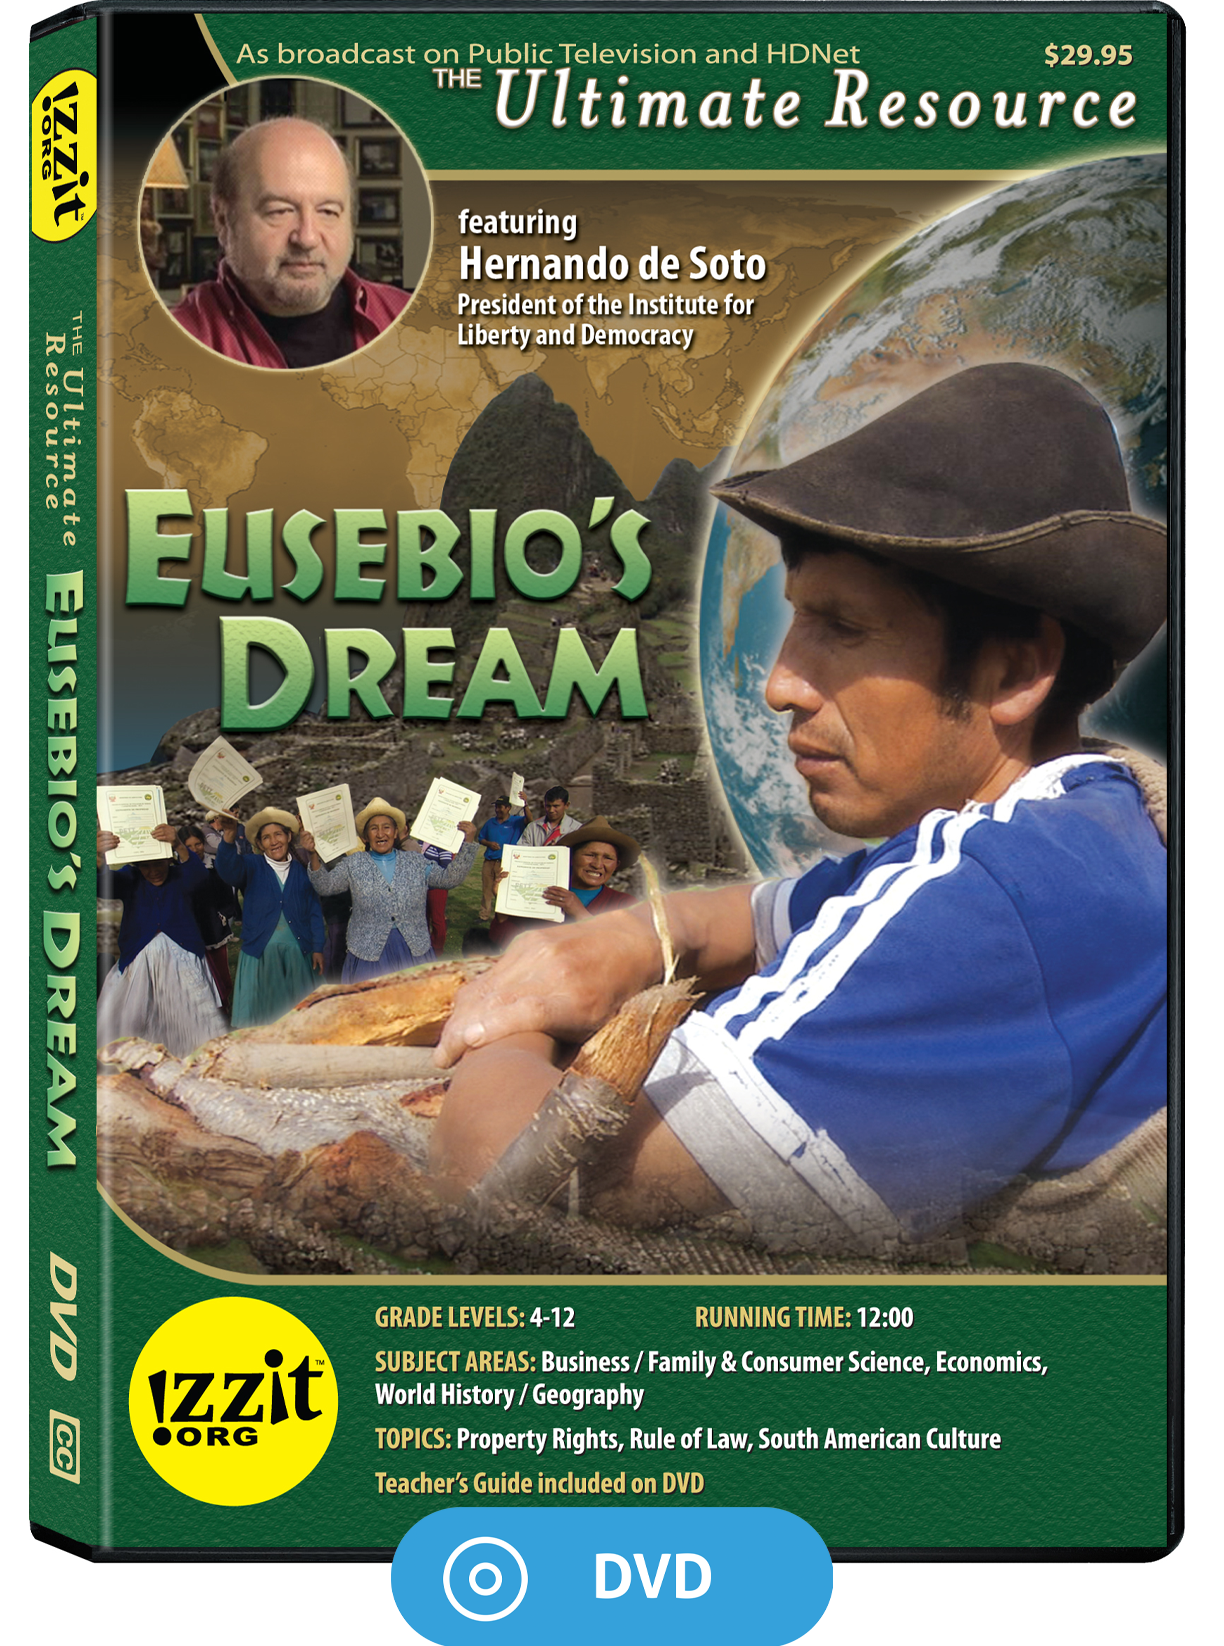 Eusebio's Dream DVD